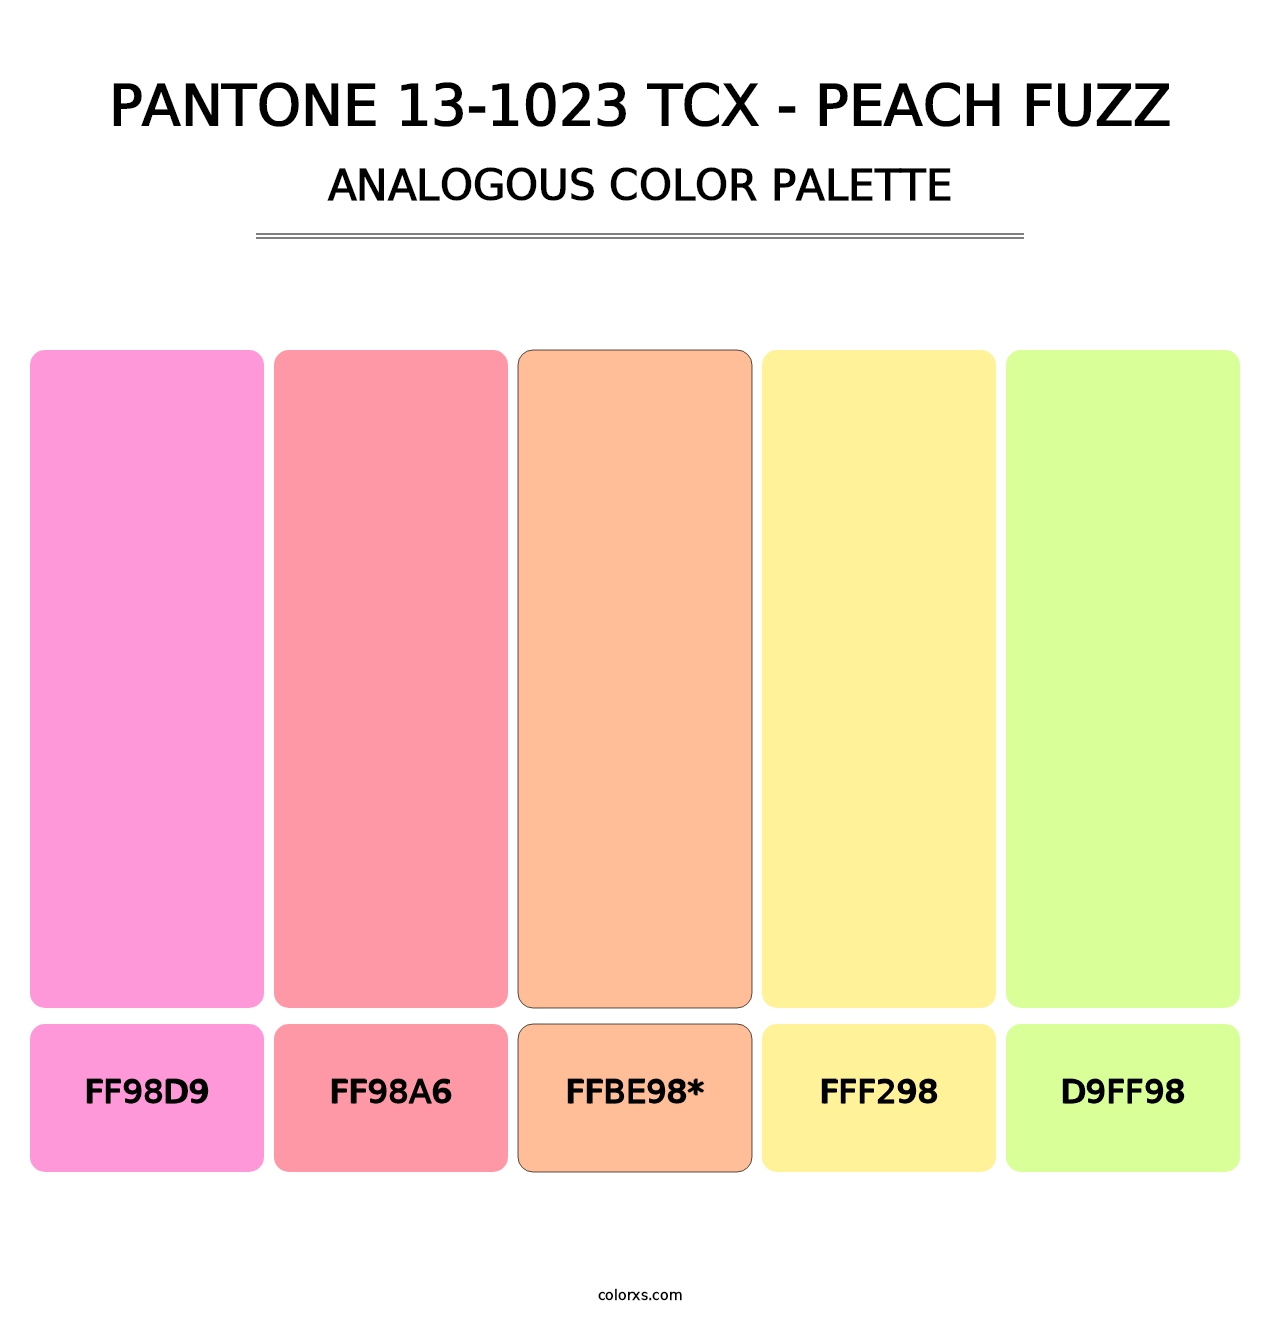 PANTONE 13-1023 TCX - Peach Fuzz - Analogous Color Palette